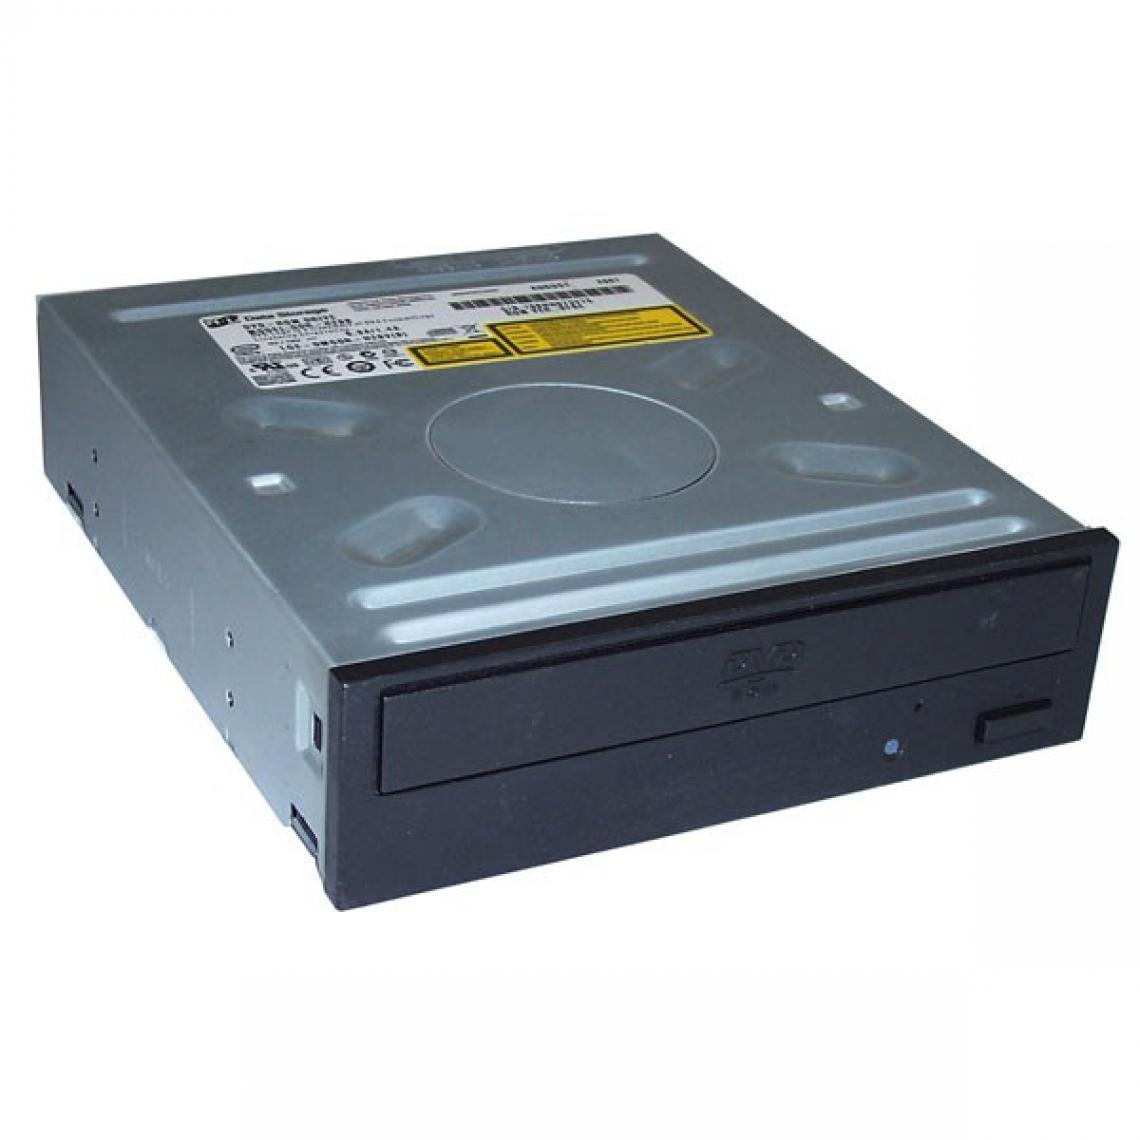 Philips Benq Digital Storage - Lecteur DVD Interne Noir 5.25" Philips BenQ DH-16D1P IDE / ATA 48x/16x PC Bureau - Lecteur Blu-ray